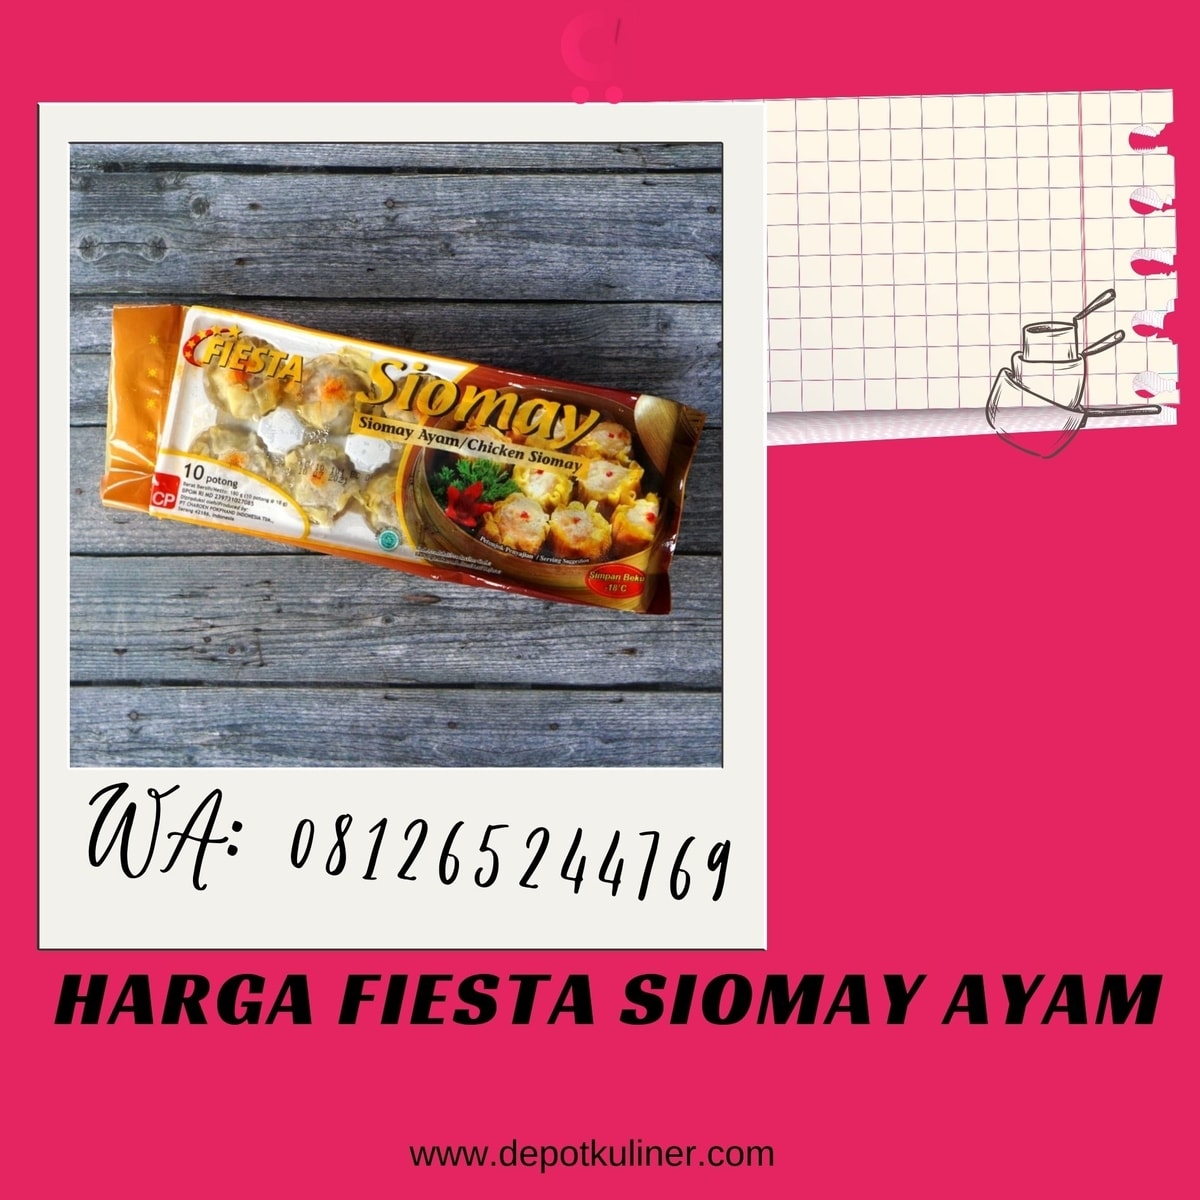 Harga Fiesta Siomay Ayam PALING LARIS, 081265244769